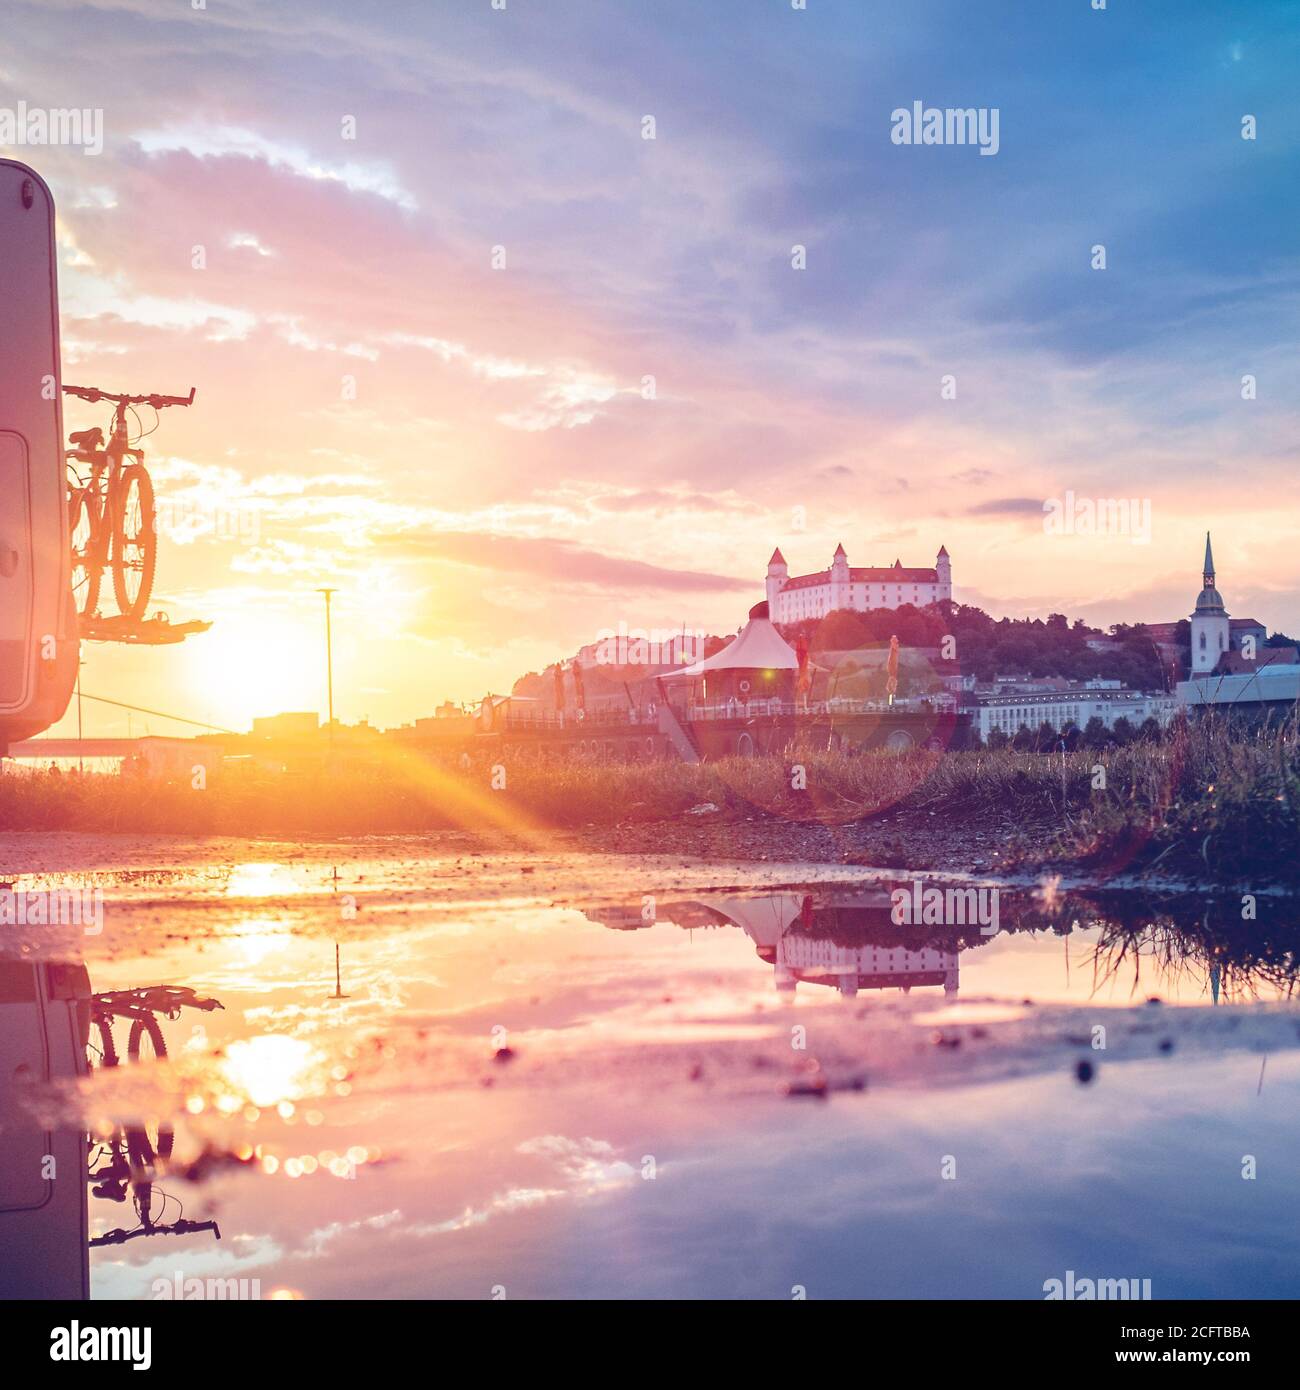 Vue sur le château de Bratislava pendant l'heure d'or avec beau coucher de soleil sur le Danube et le ricochet dans la piscine d'eau du paysage, Slovaquie Banque D'Images